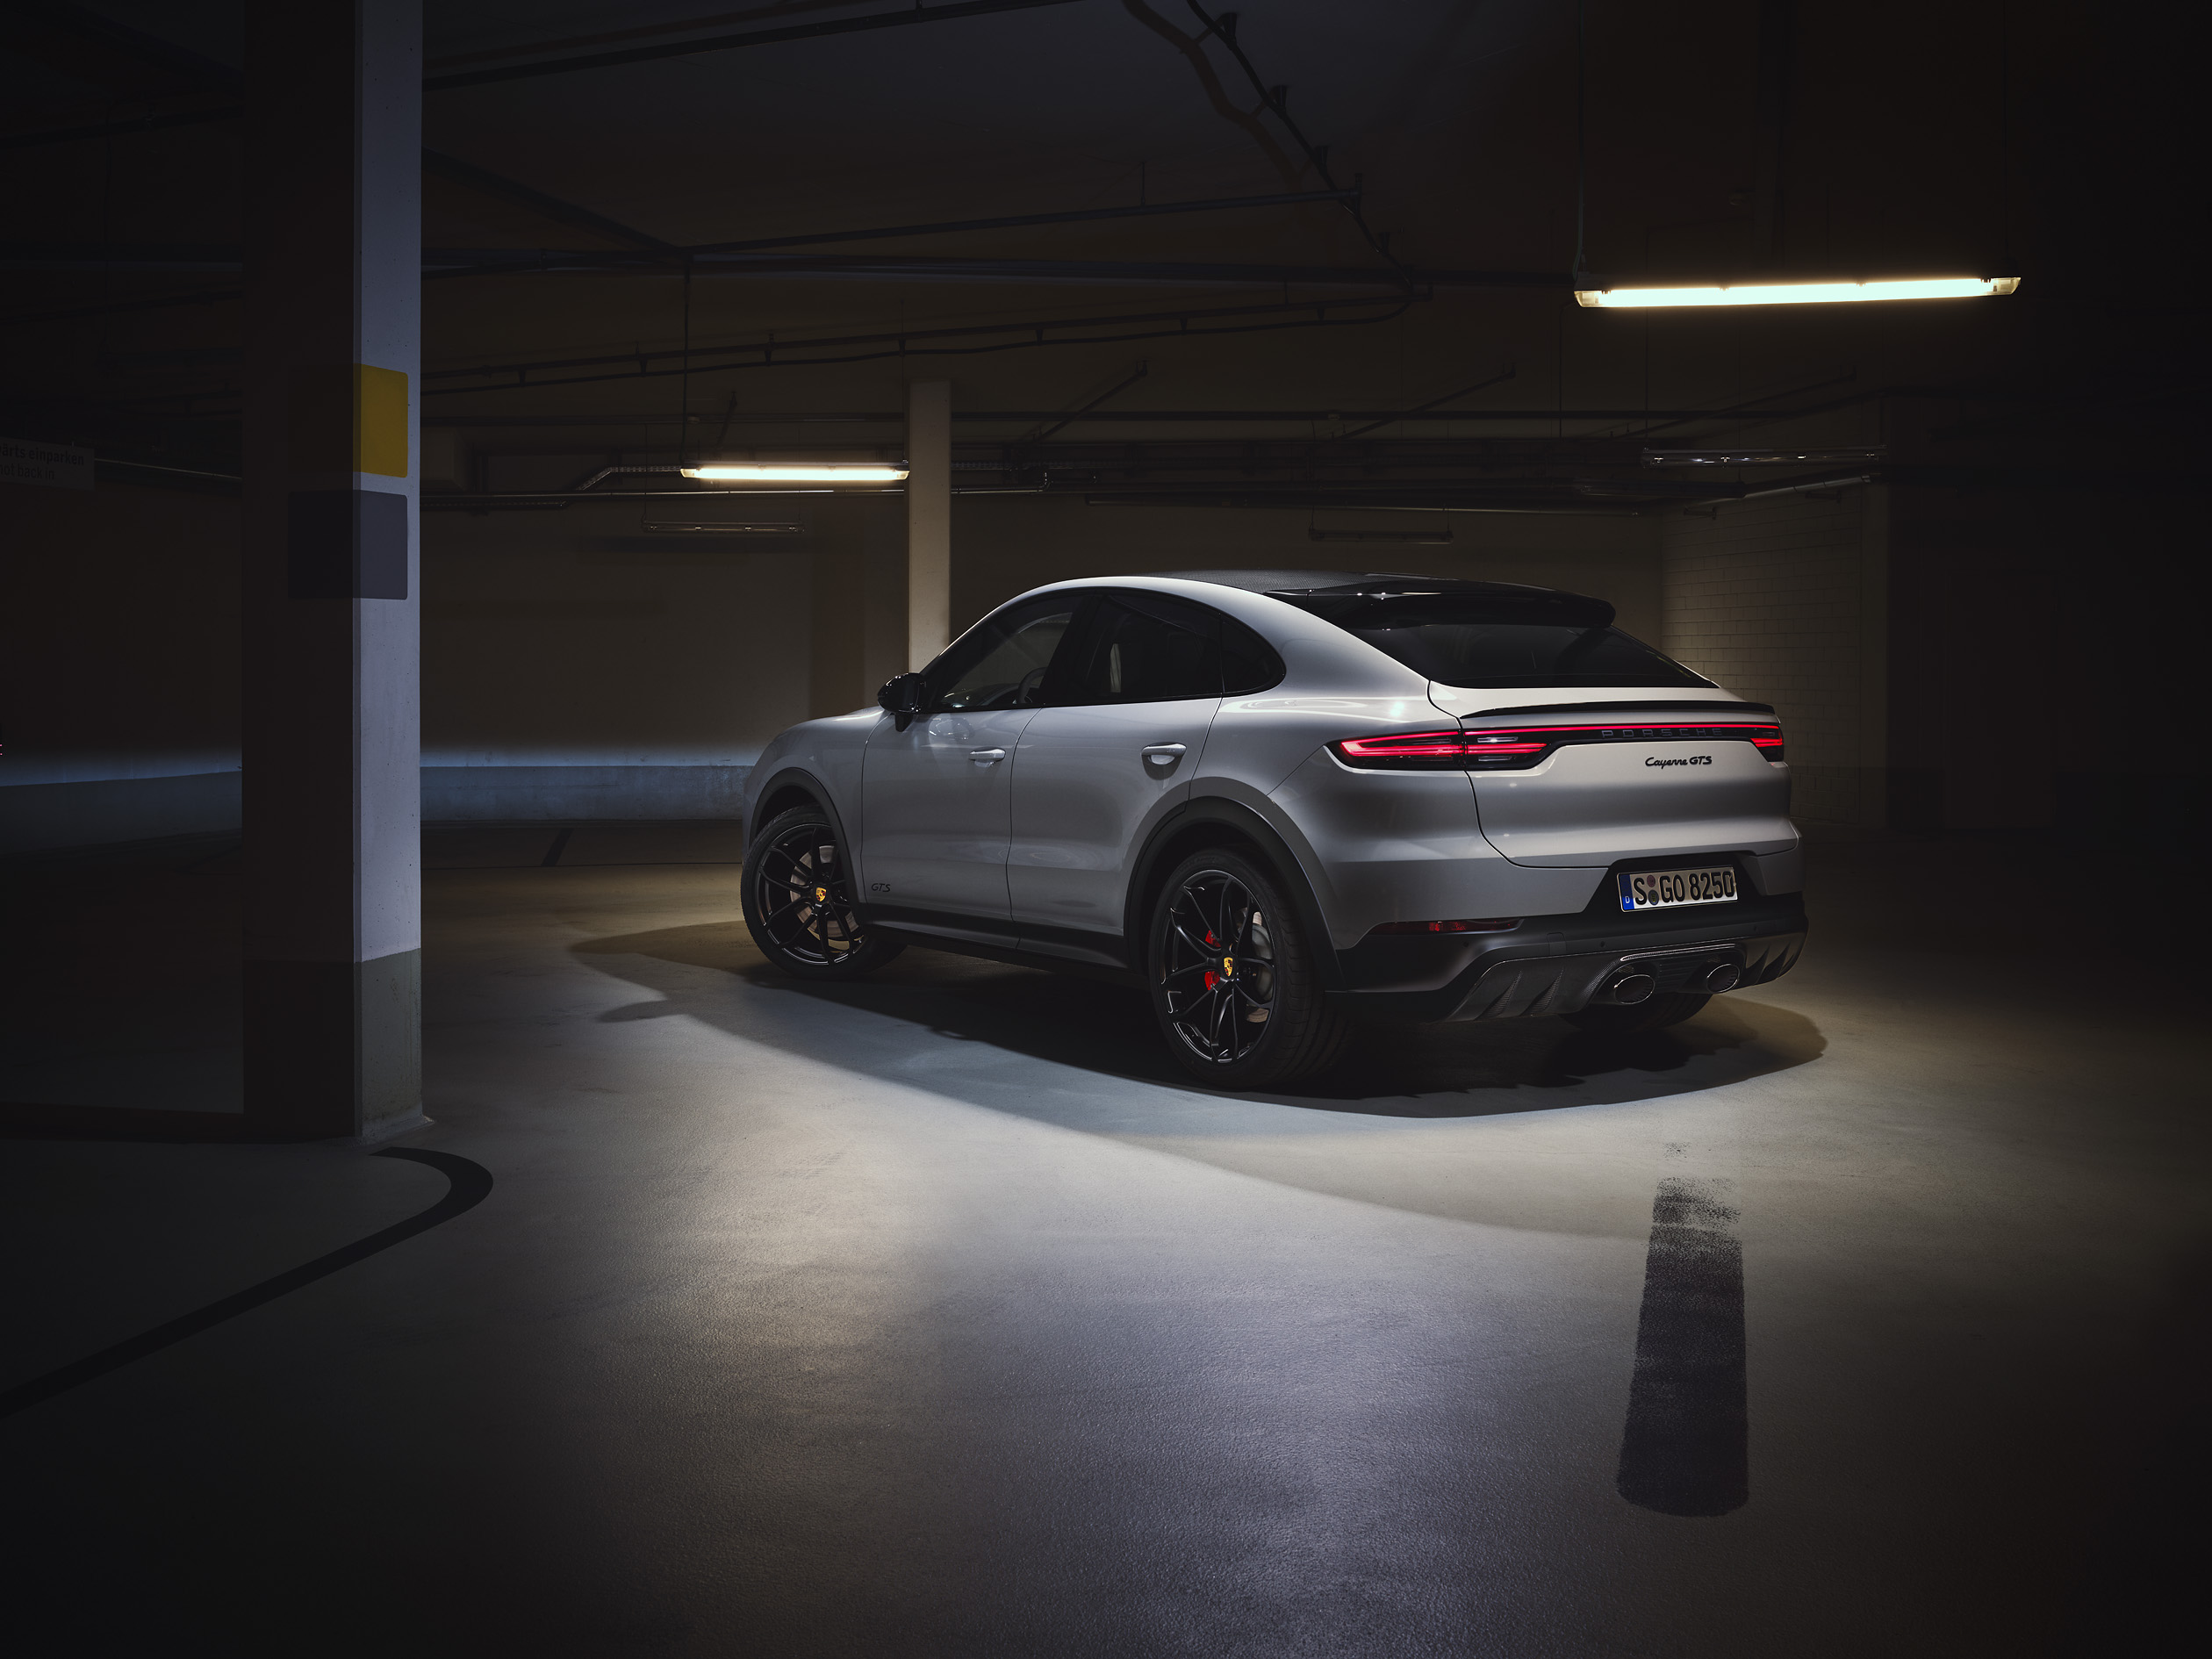 全新 Cayenne GTS 車系標準配備高光澤黑色 21 吋 RS Spyder Design 輪圈，同時配備燻黑LED頭燈系統含保時捷動態照明系統（PDLS）與燻黑LED 尾燈。